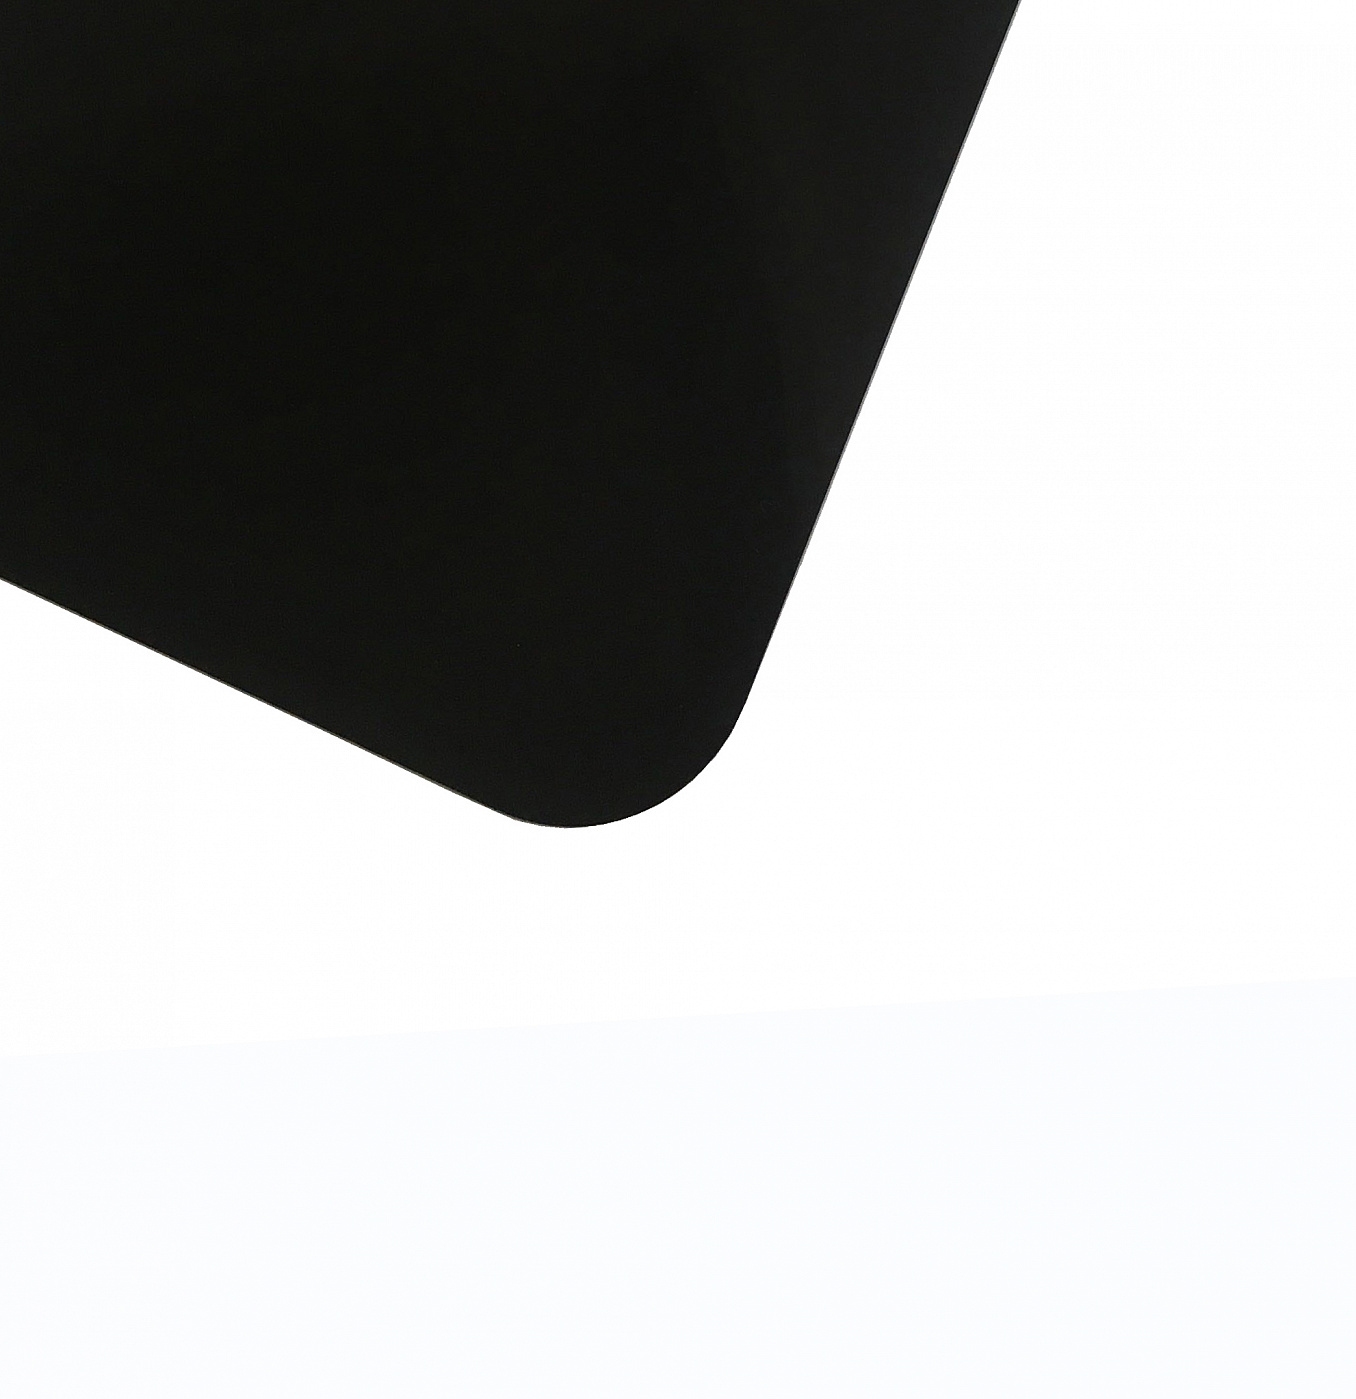 Планшет для пленэра из оргстекла 3 мм, под лист размера А4+, цвет черный Dec-9082001 - фото 1